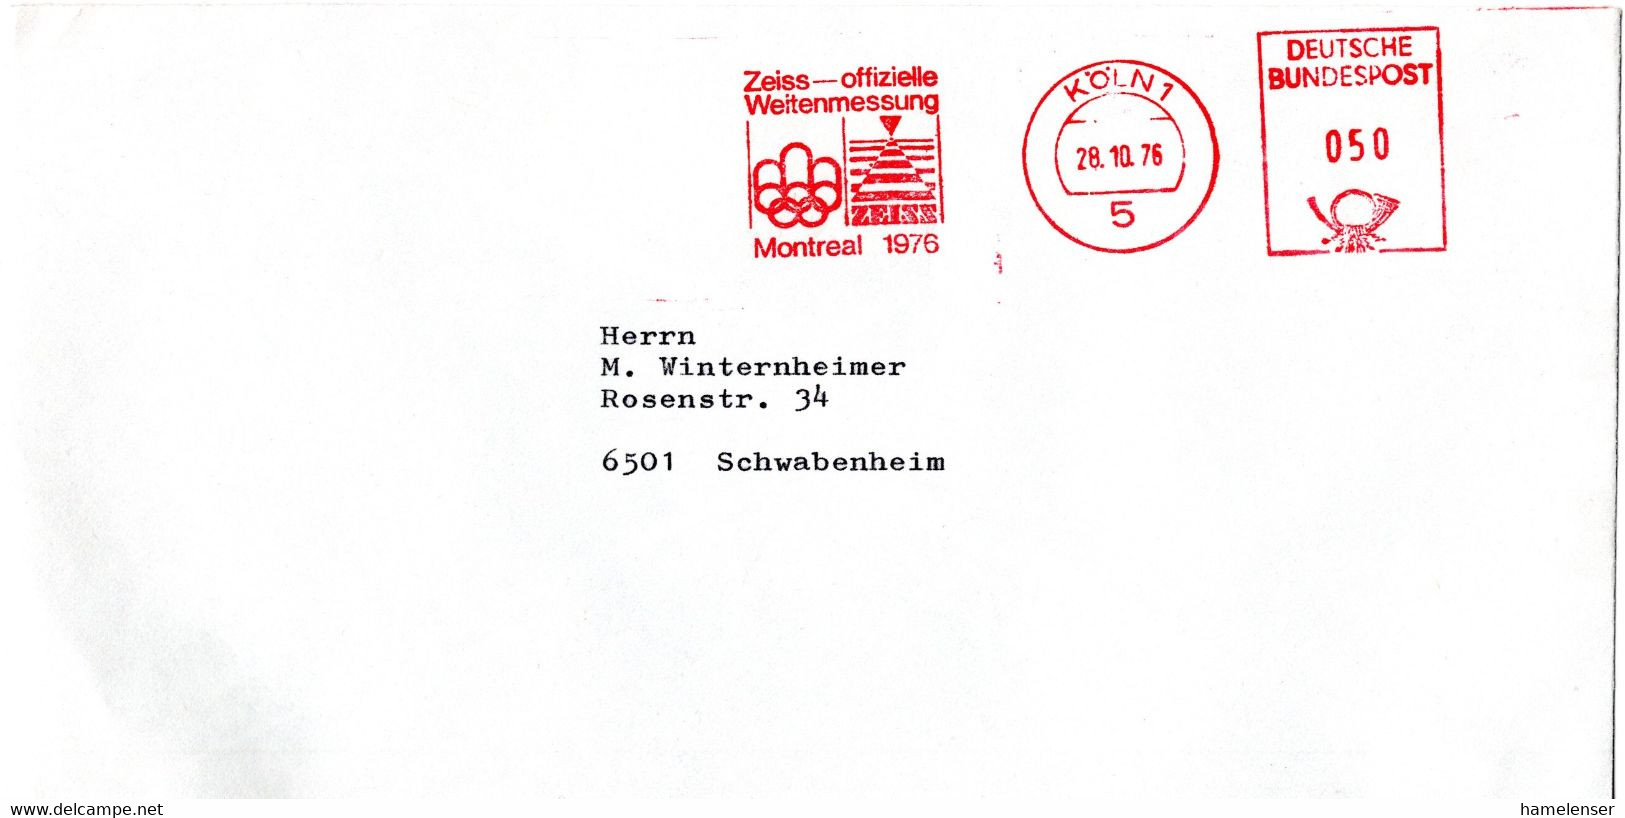 L56465 - Bund - 1976 - 50Pfg AbsFreistpl A Bf KOELN - ZEISS OFFIZIELLE WEITENMESSUNG MONTREAL 1976 -> Schwabenheim - Ete 1976: Montréal